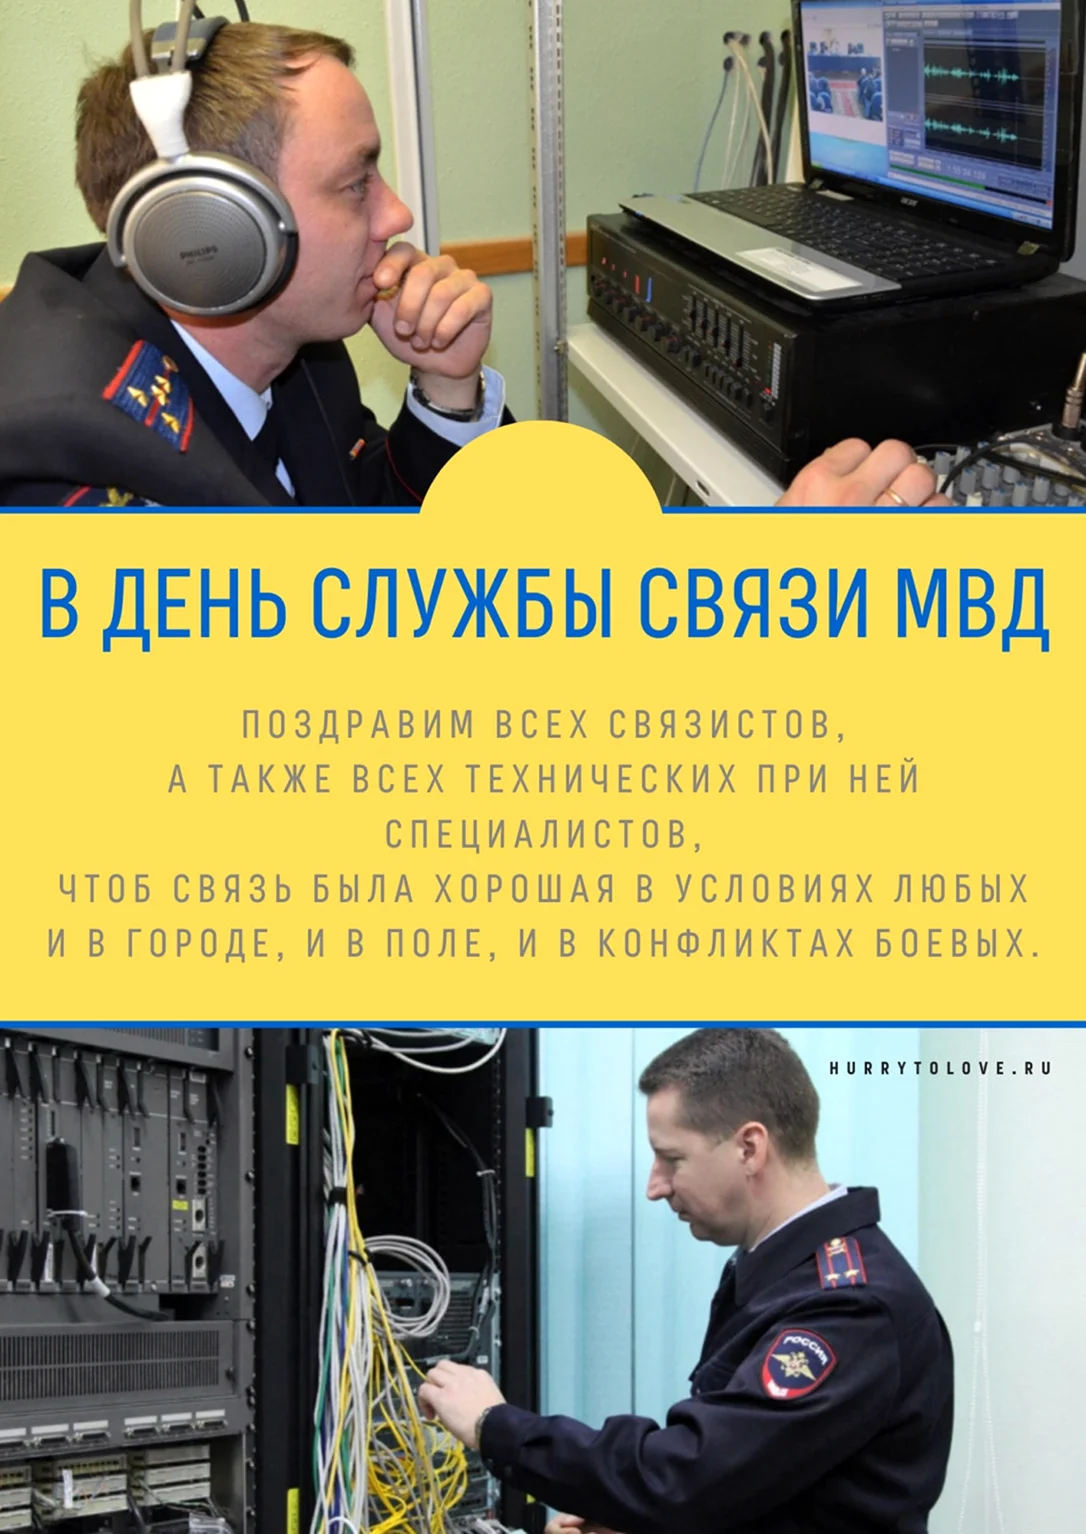 День создания службы связи МВД России 10 декабря. Поздравление